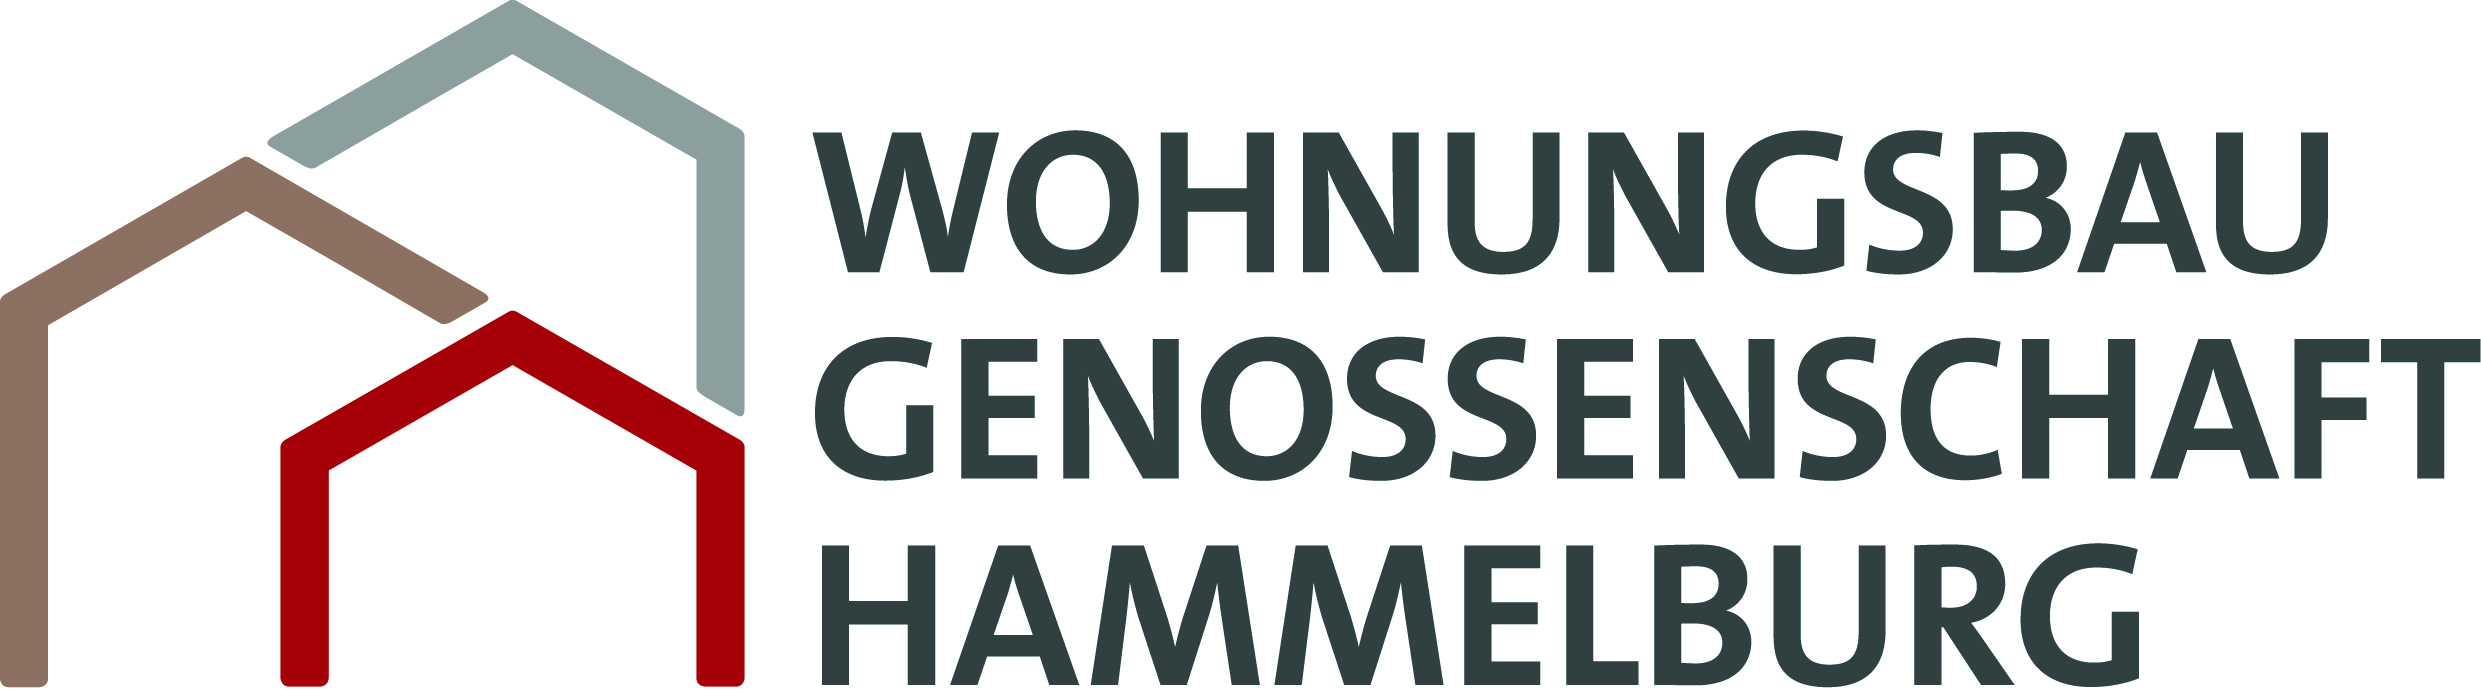 Logo-Wohnungsbaugenossenschaft Hammelburg